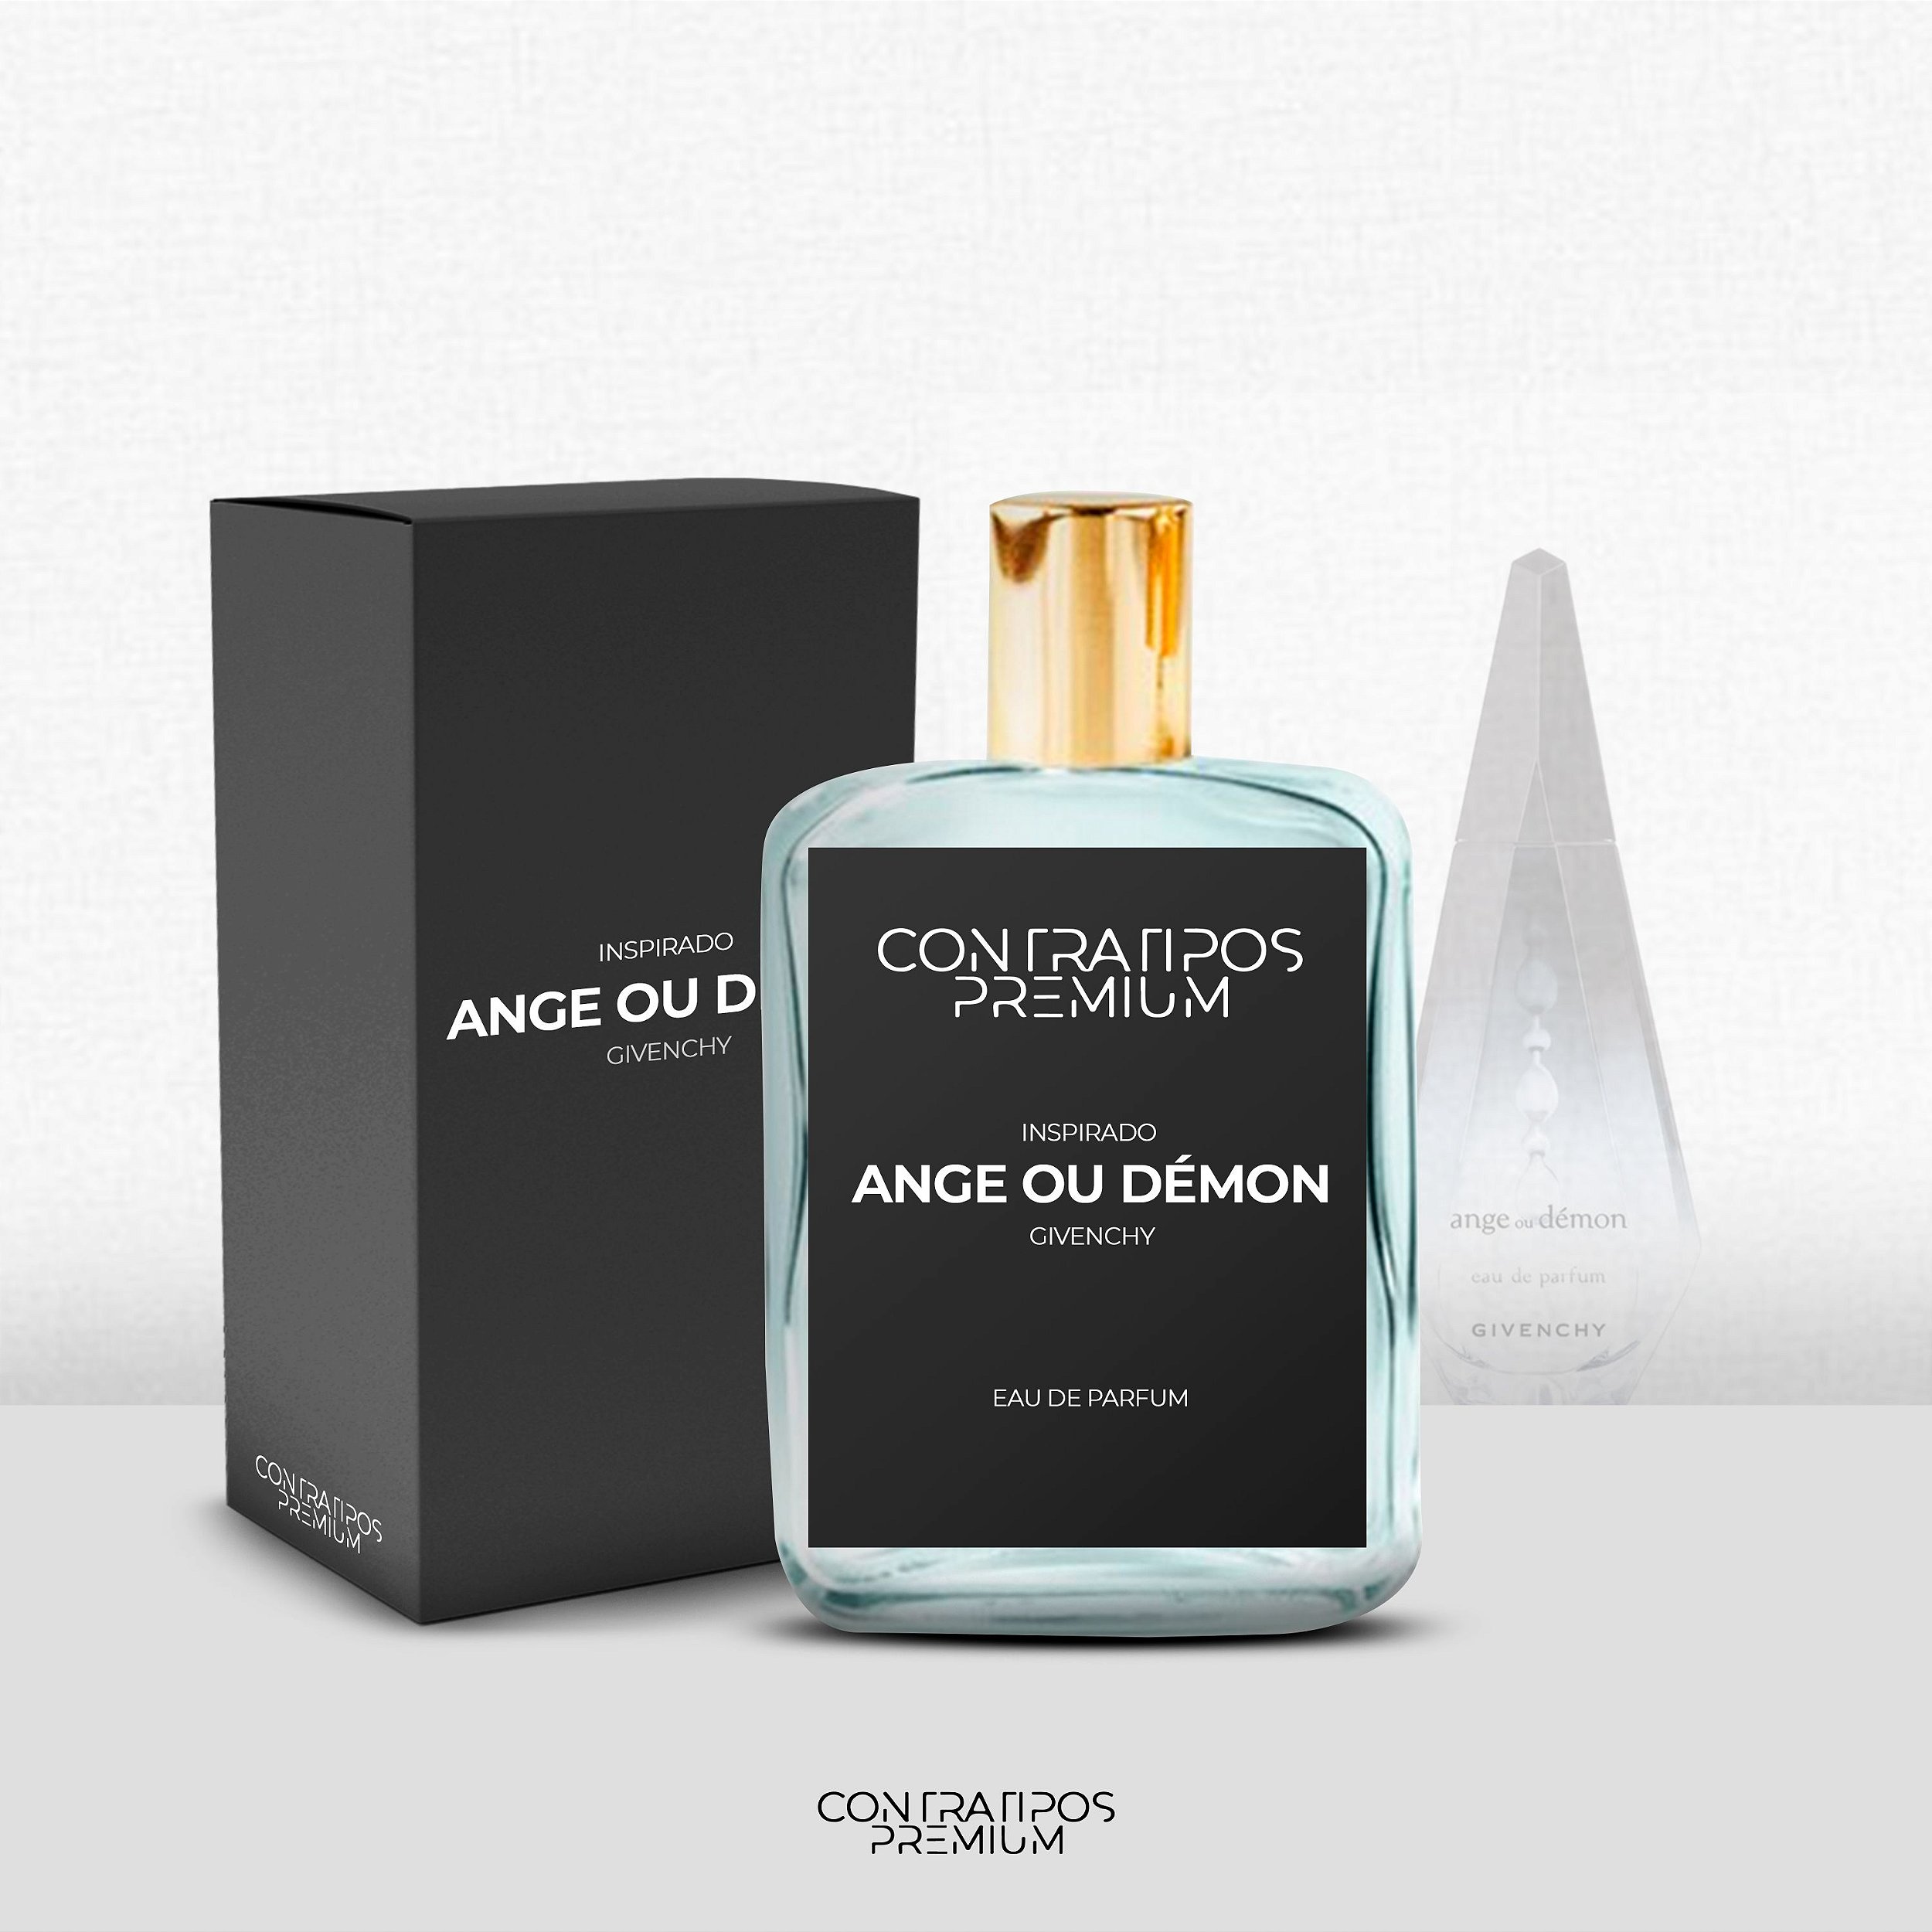 PERFUME CONTRATIPO - INSPIRADO ANGE OU DEMON - Loja ContratiposPremium -  Contratipos de perfumes originais - Perfumaria e Essências